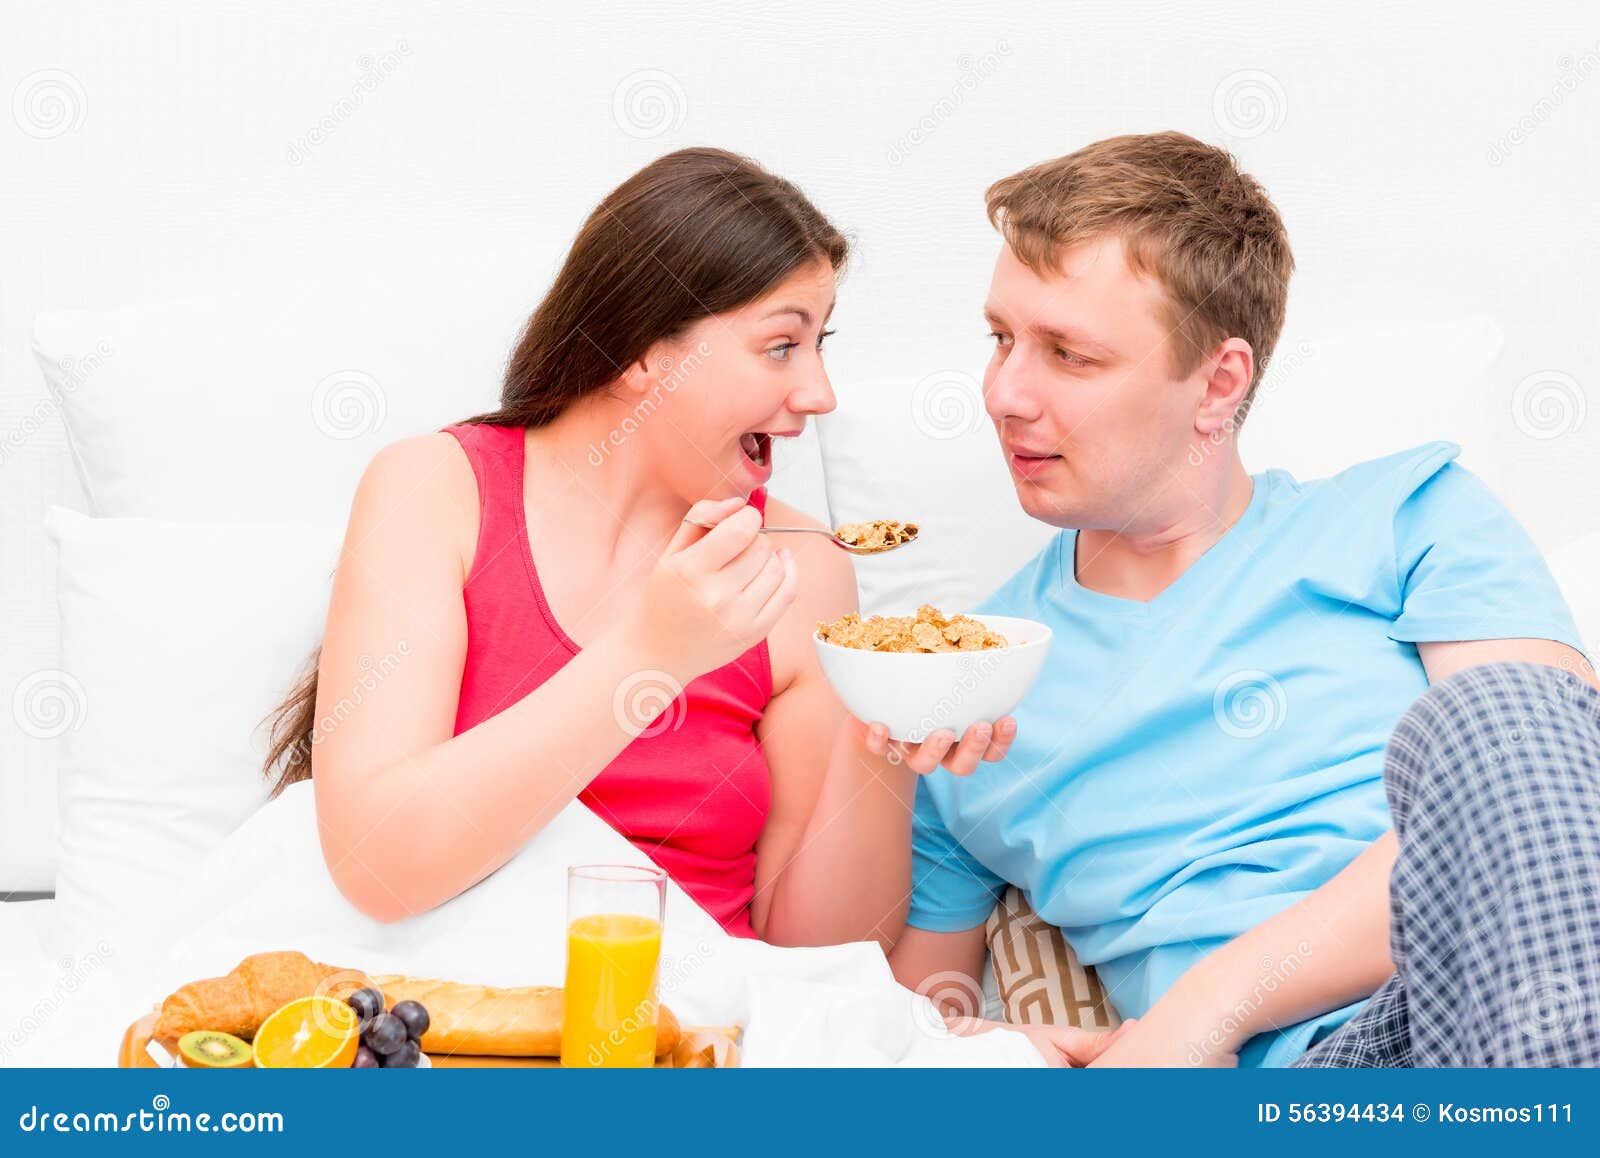 wife feeding husband after cum